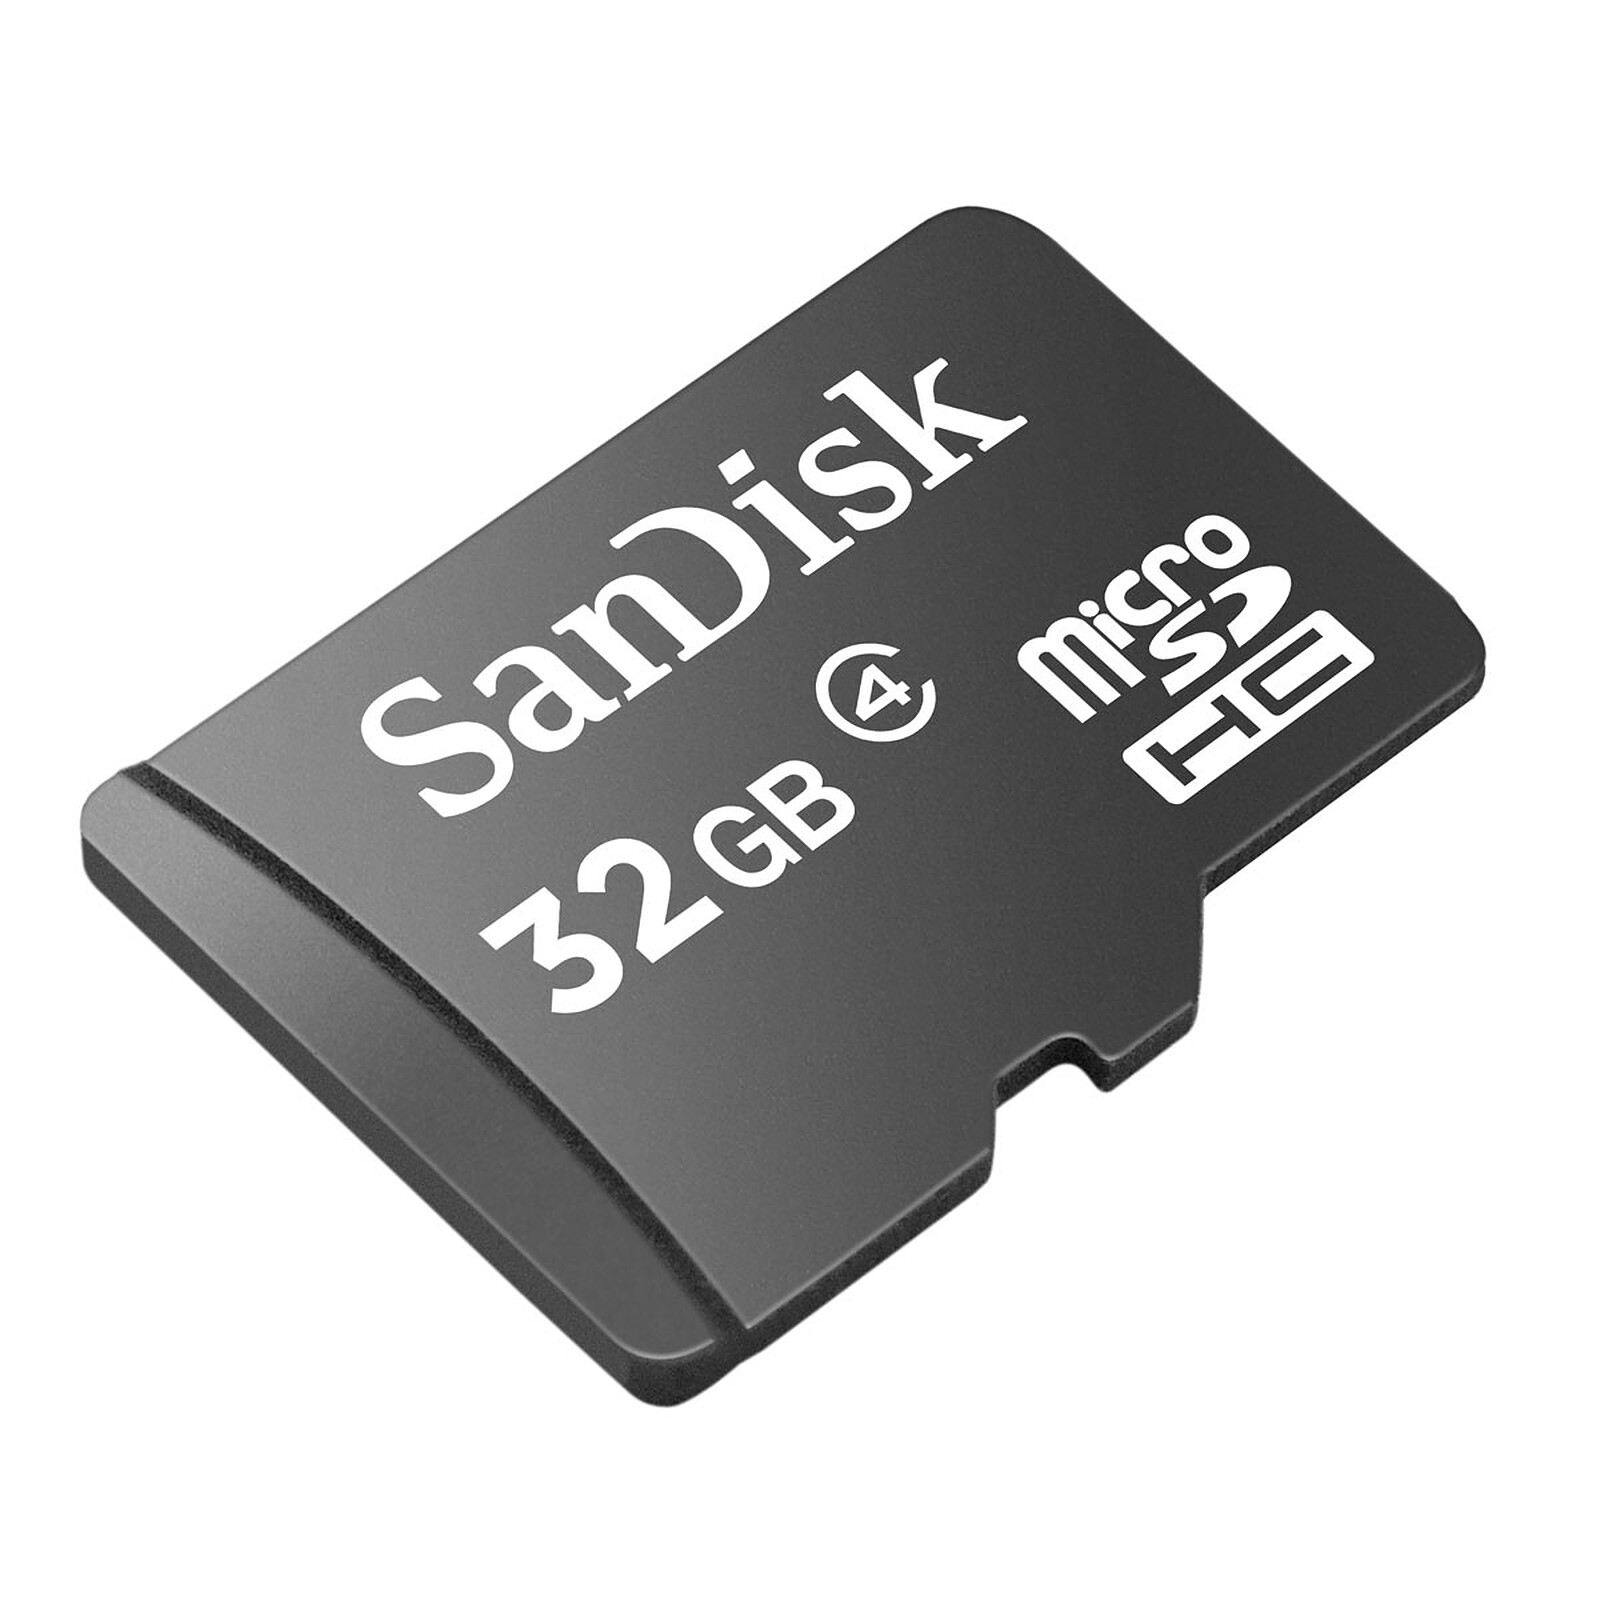 Manía Haz lo mejor que pueda frágil SanDisk tarjeta de memoria microSDHC 32 GB - Tarjeta de memoria Sandisk en  LDLC